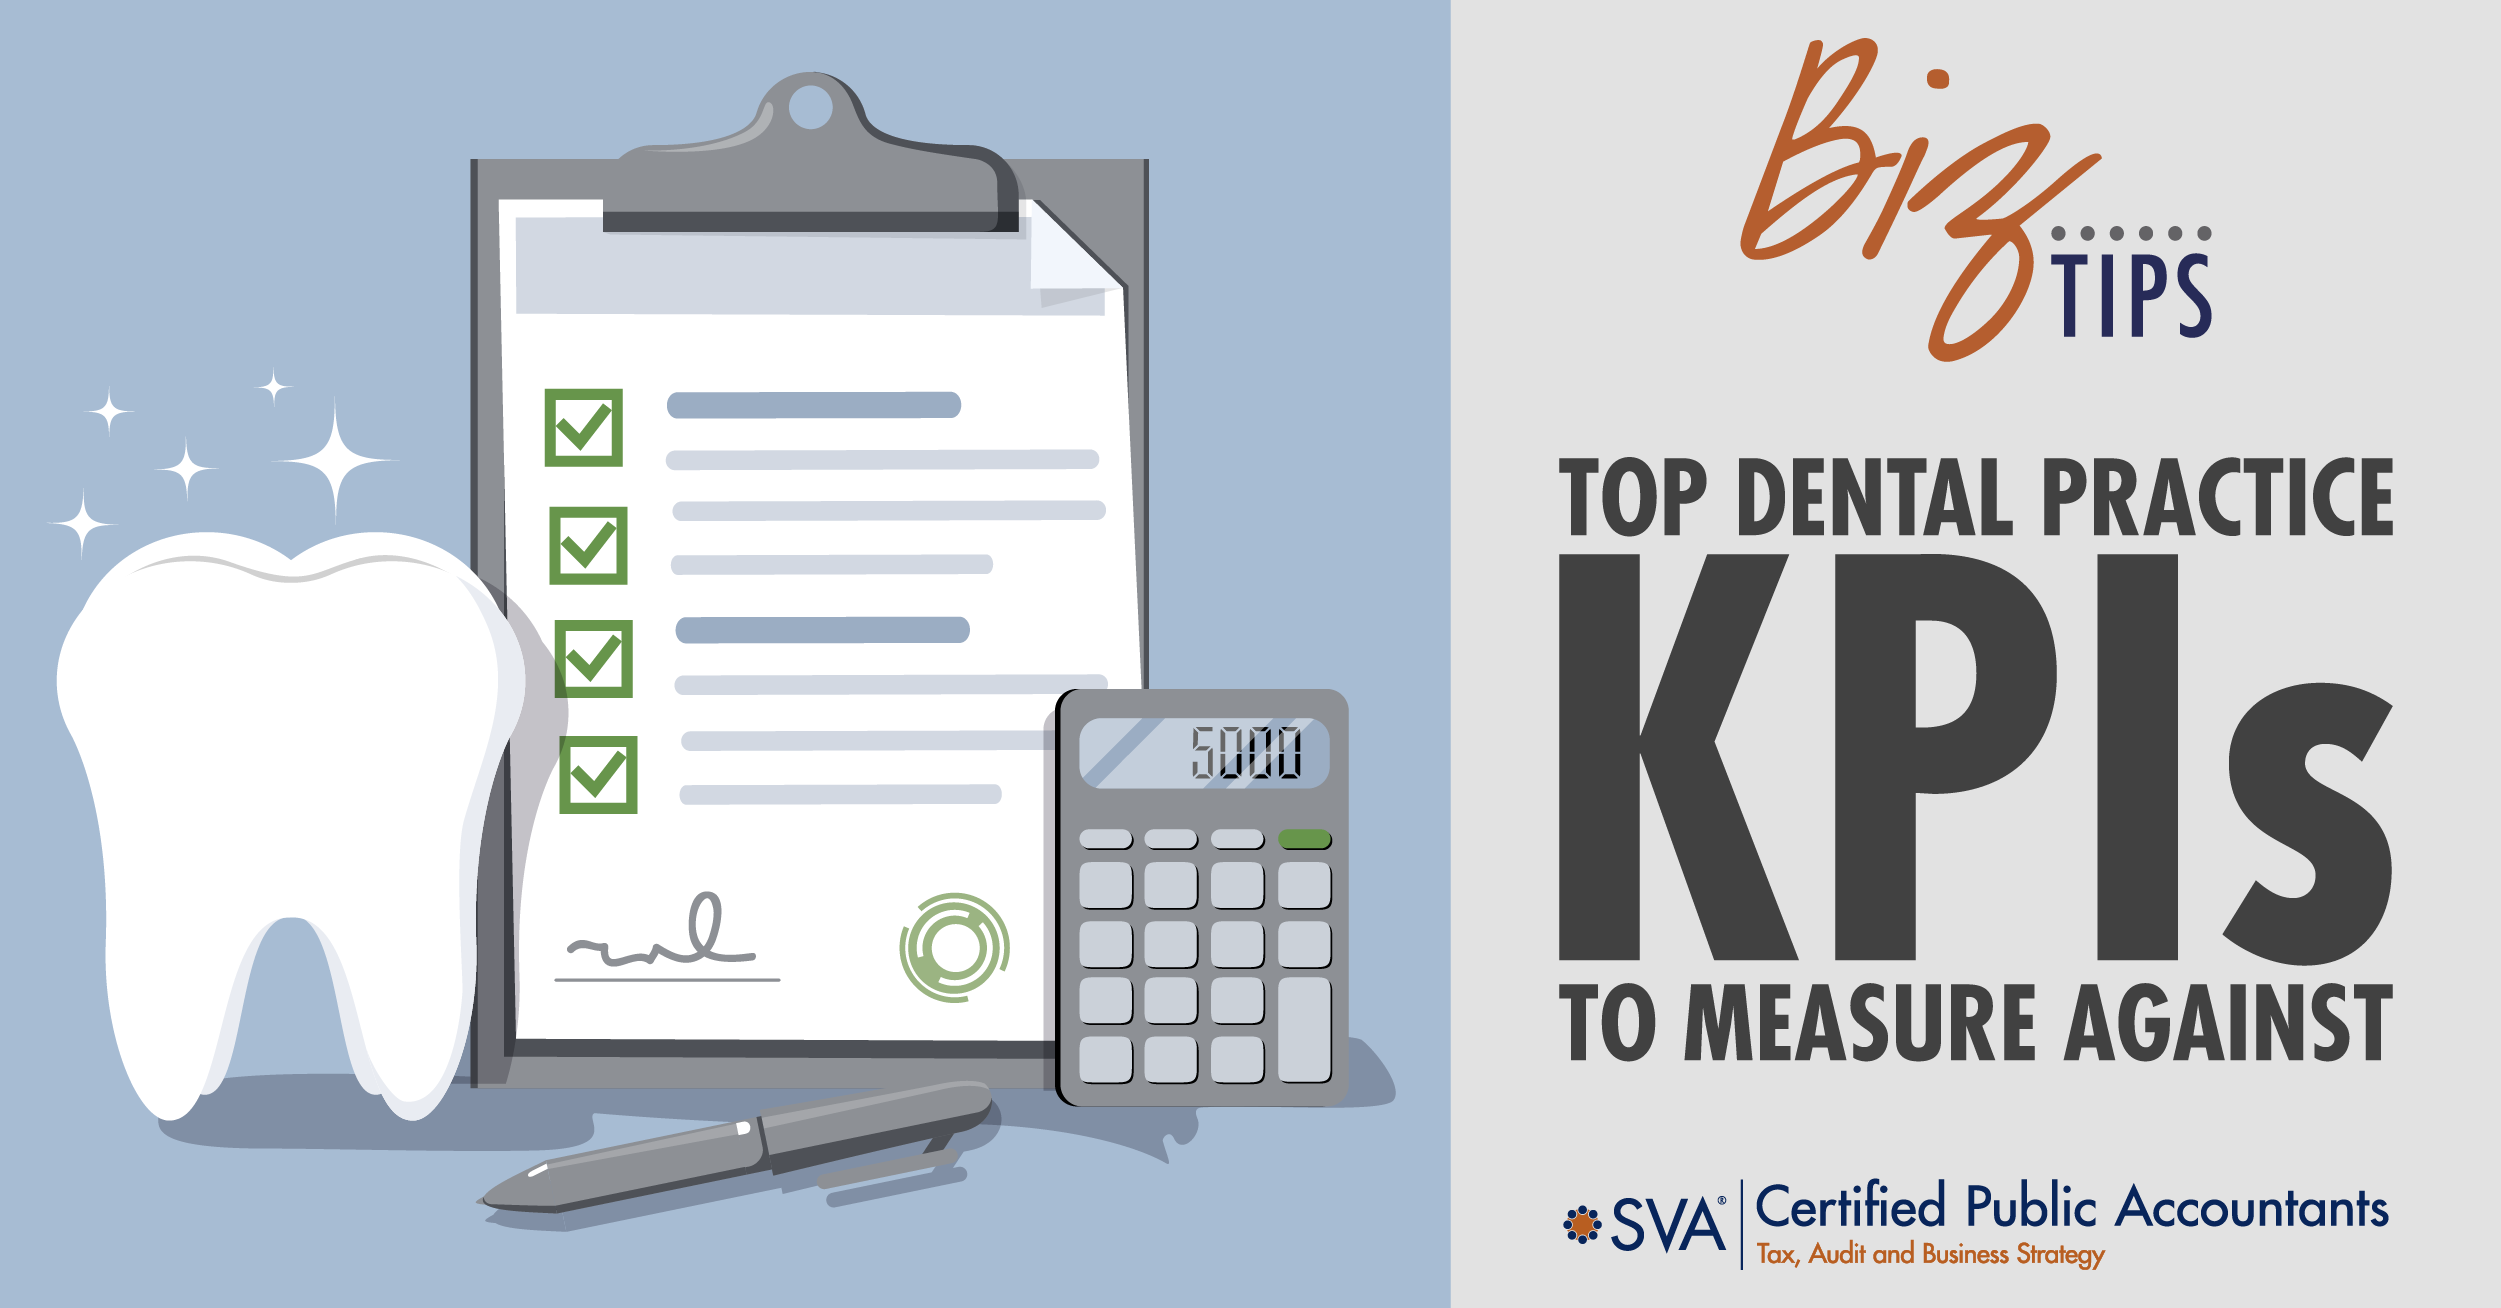 Top Dental Practice KPIs to Measure Against